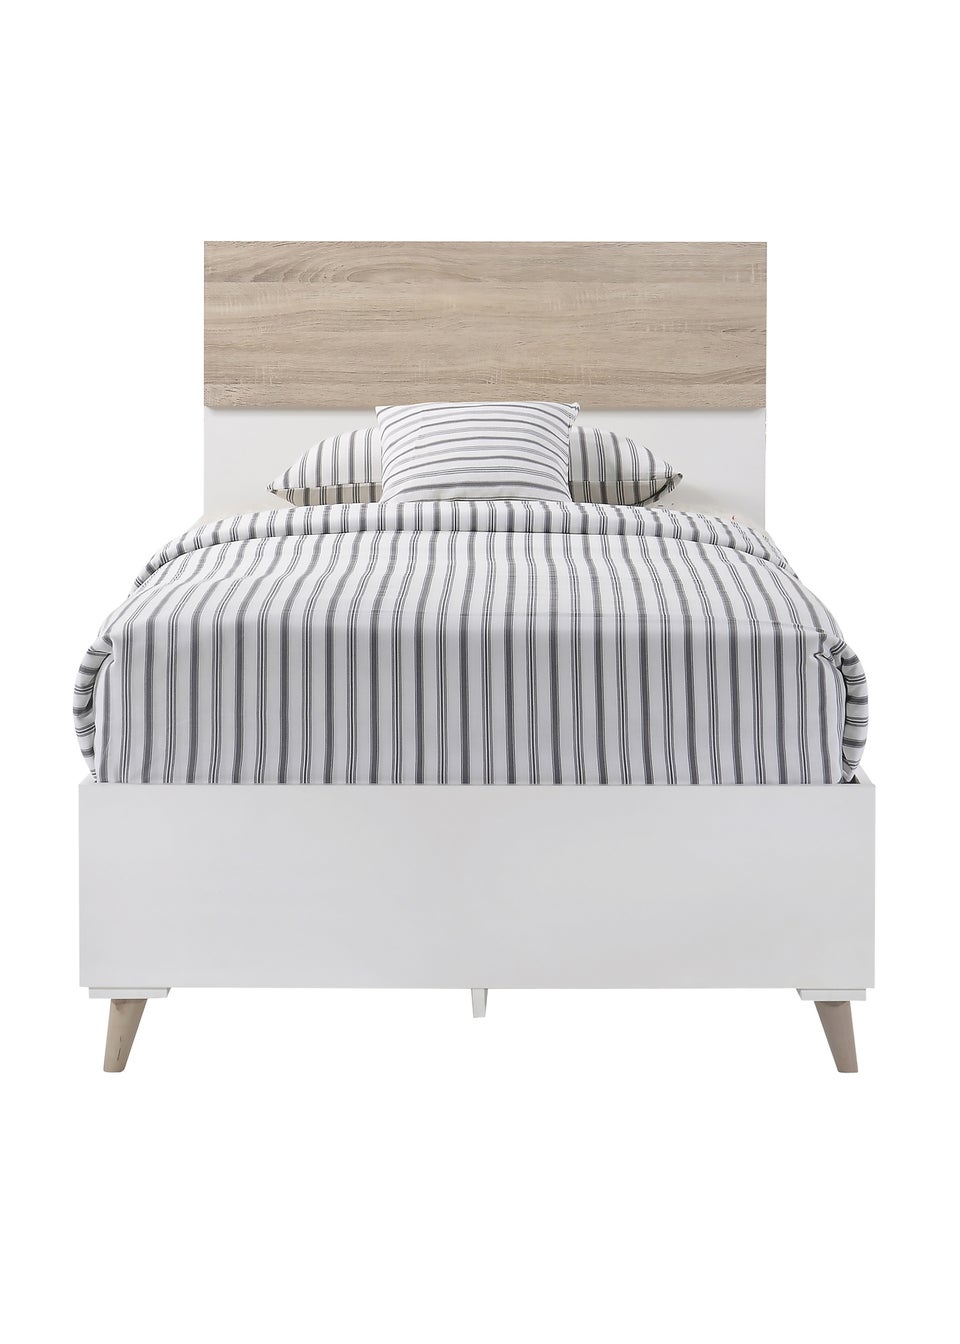 LPD Furniture Stockholm Bed